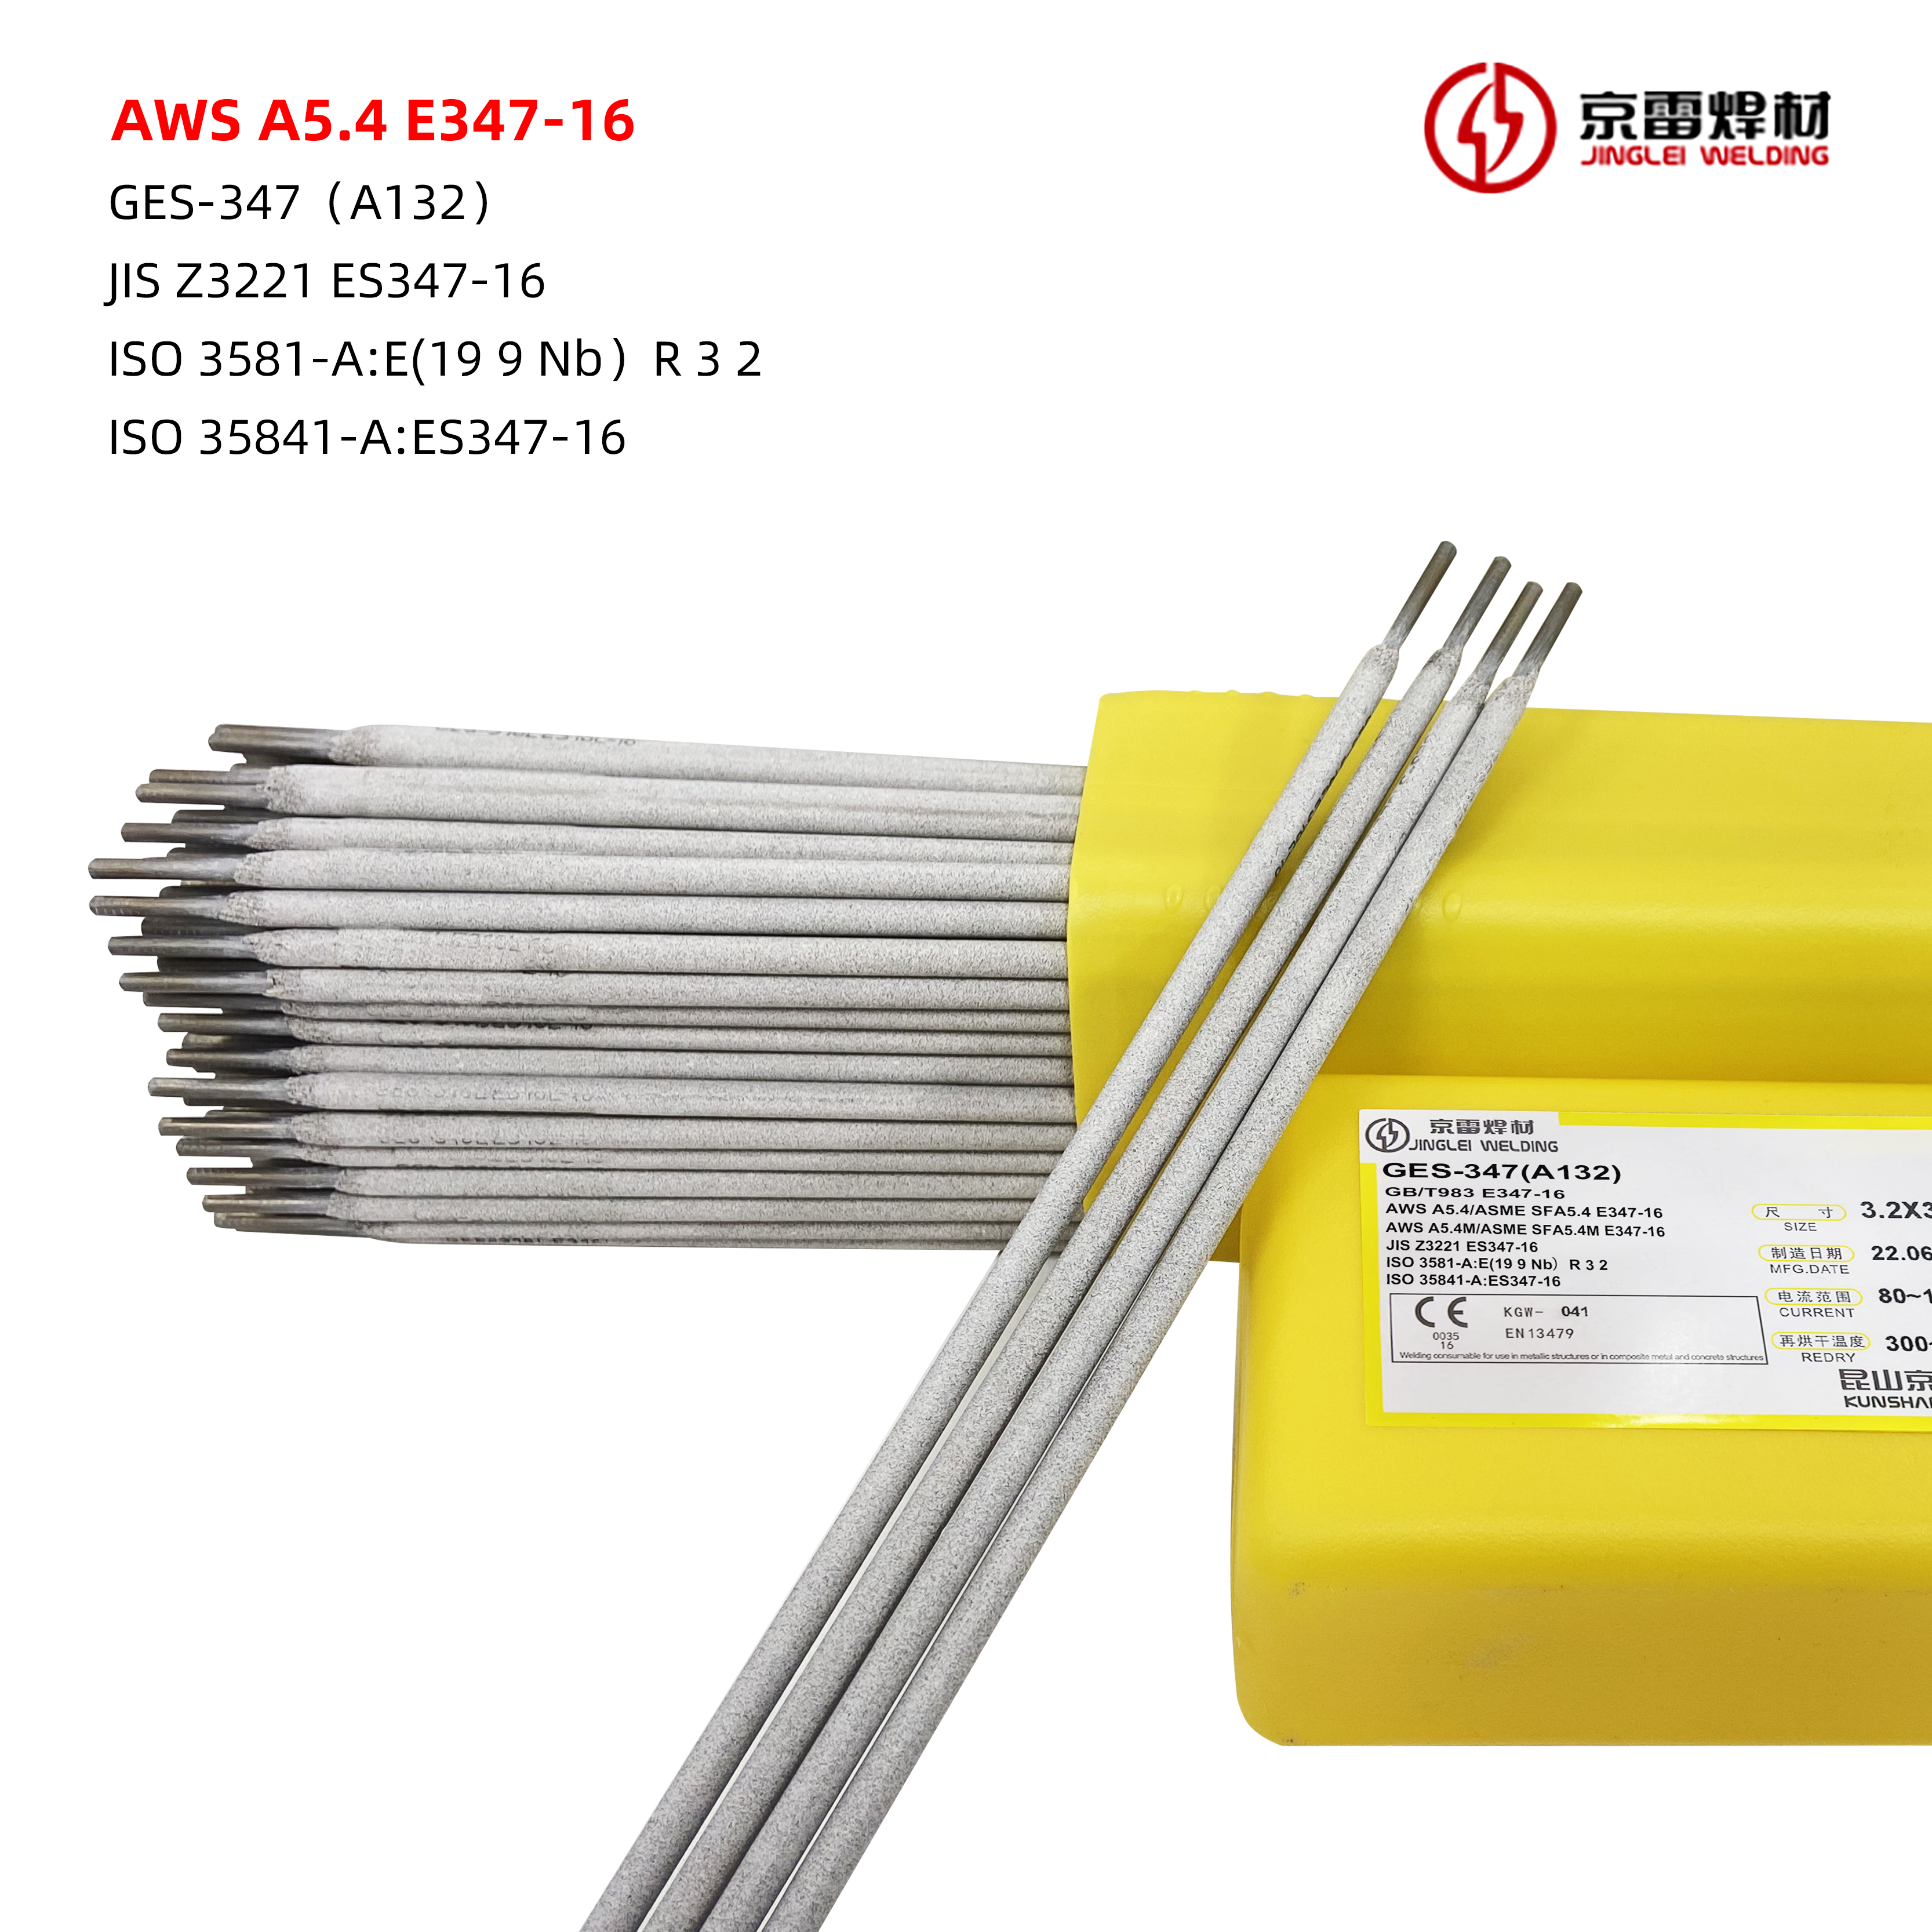 AWS A5.4 E347-16 01